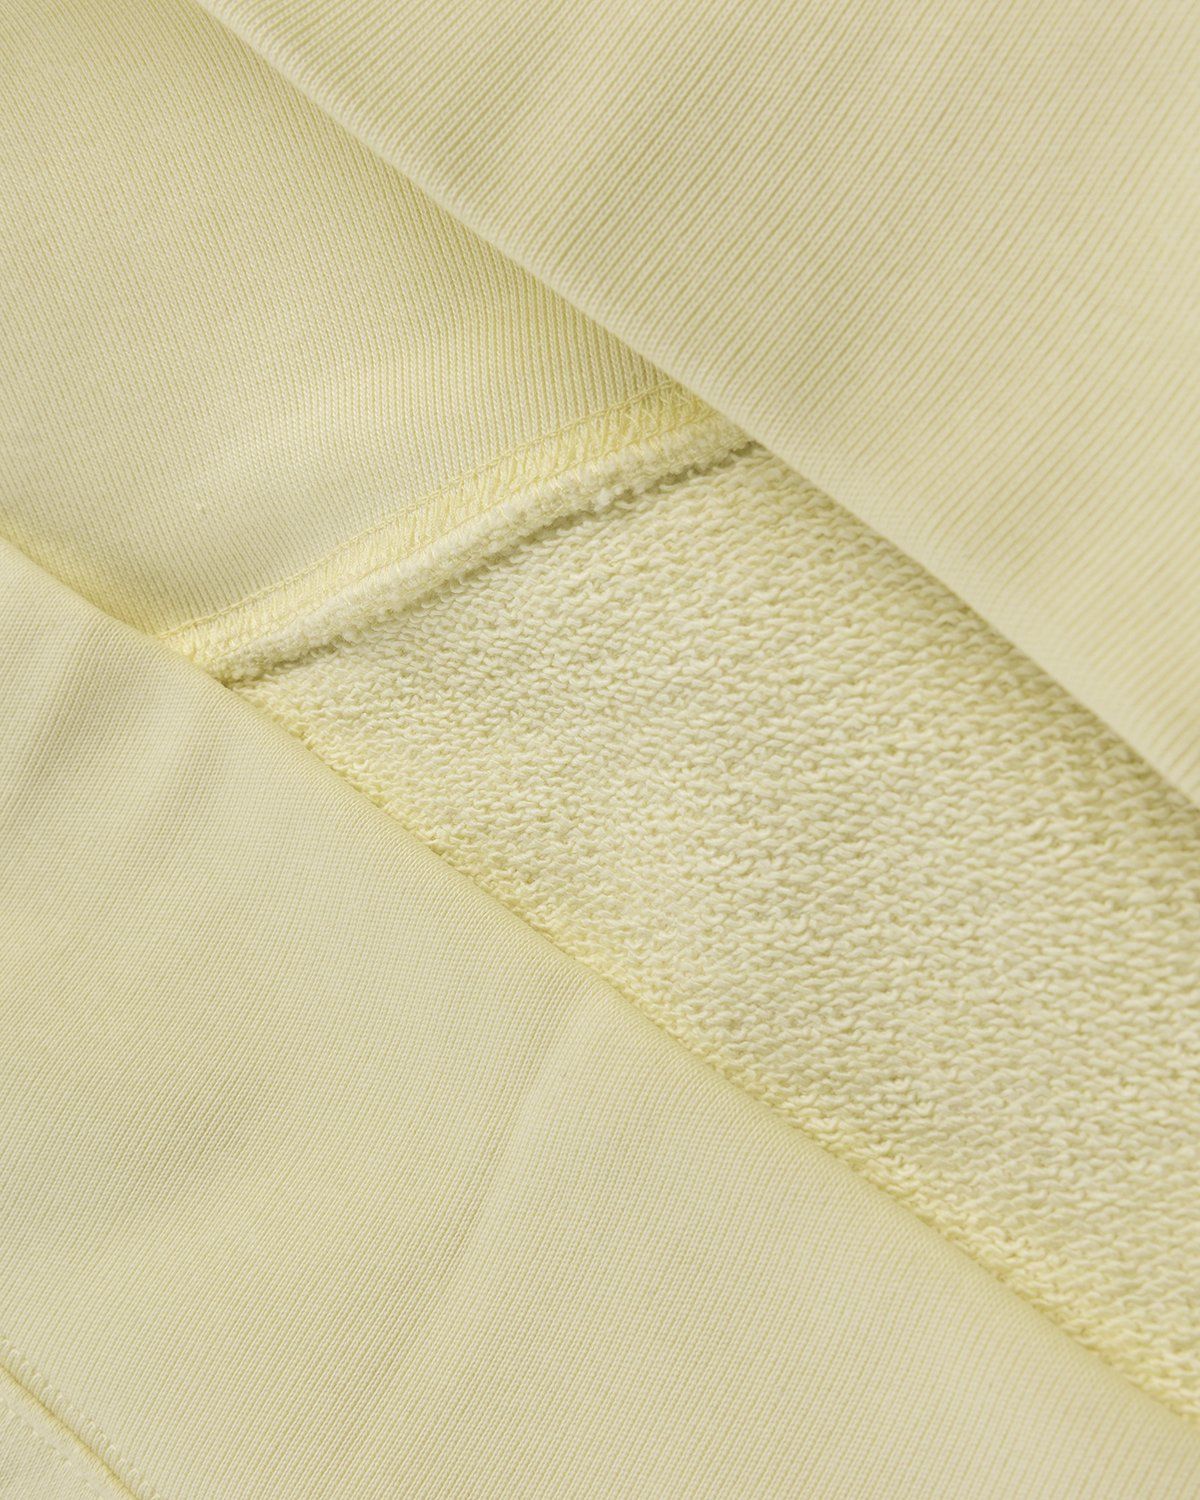 Acne Studios – Organic Cotton Hooded Sweatshirt Vanilla Yellow - Hoodies - Yellow - Image 3